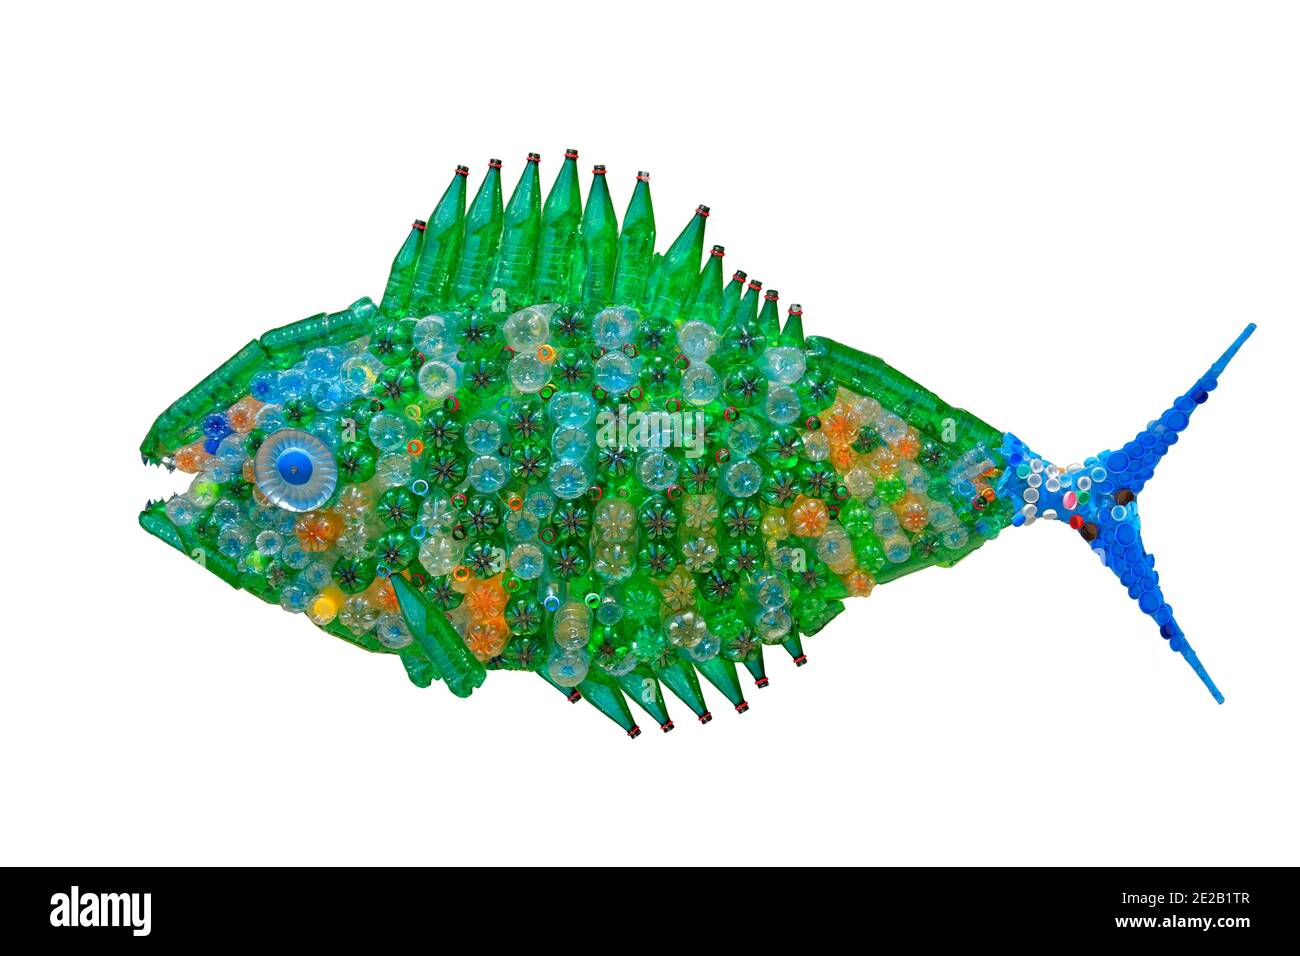 Fischmerkmale, die aus Kunststoffabfällen hergestellt wurden, um die Verschmutzung der Meeresumwelt zu veranschaulichen. Stockfoto